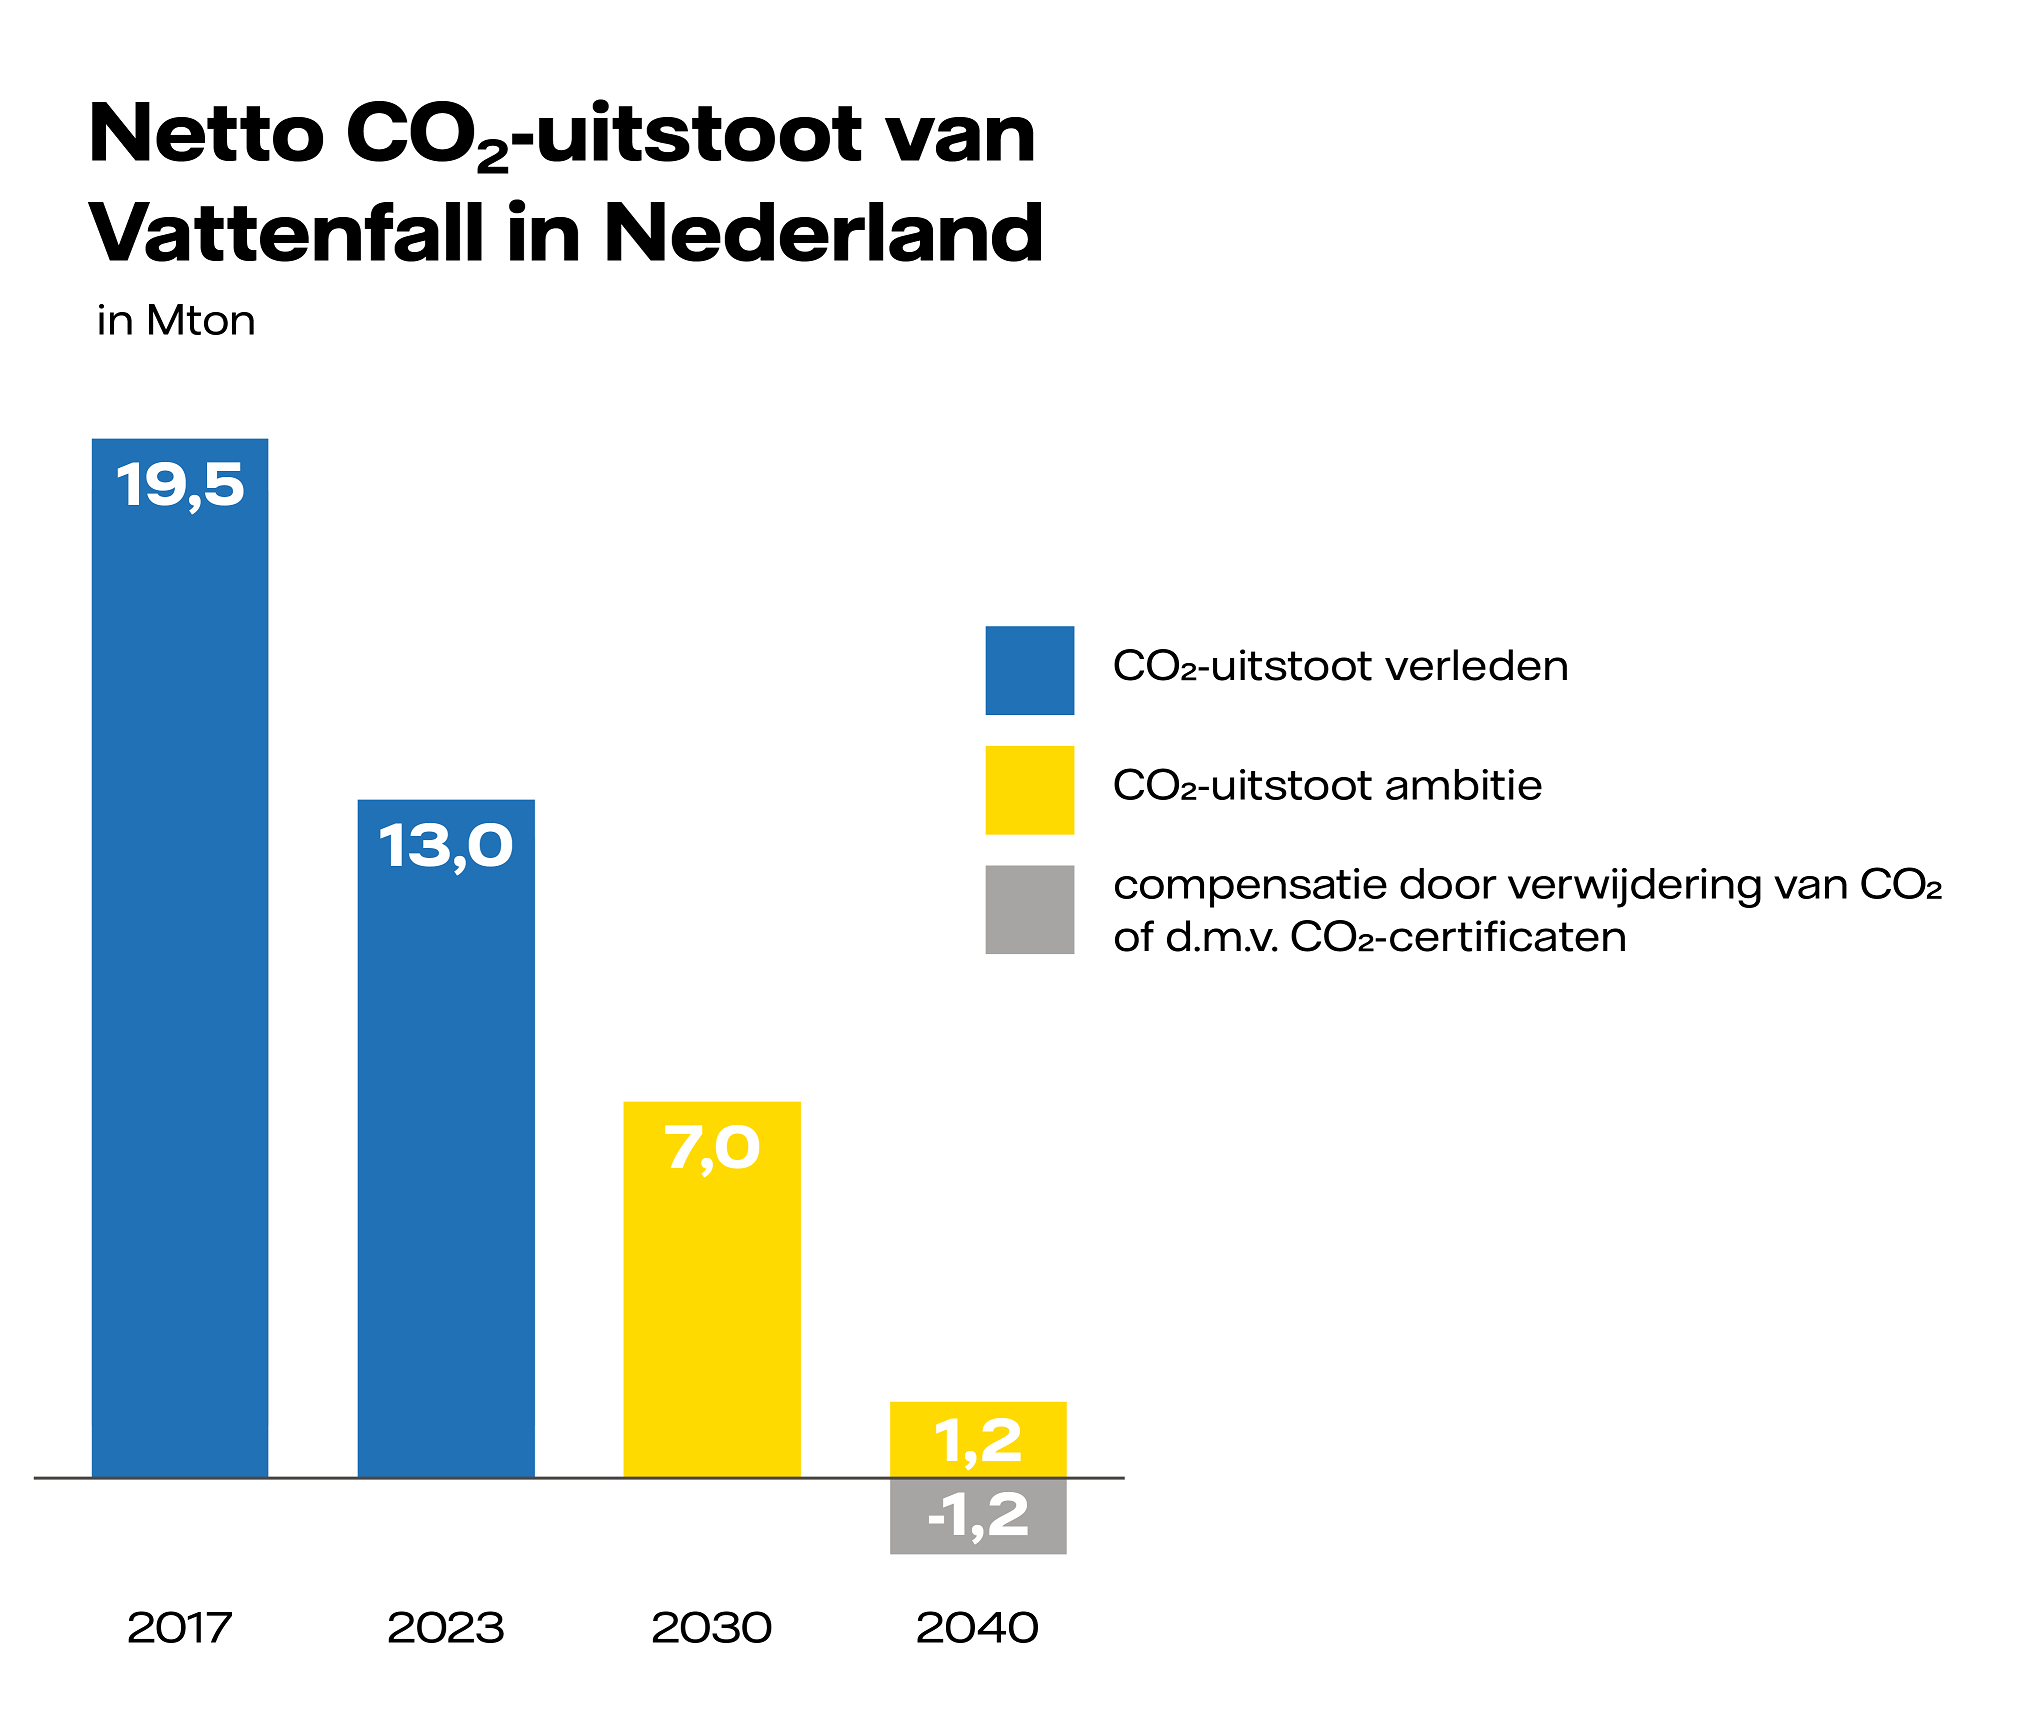 Netto-CO2-uitstoot-van-Vattenfall-in-Nederland-horizontaal.png